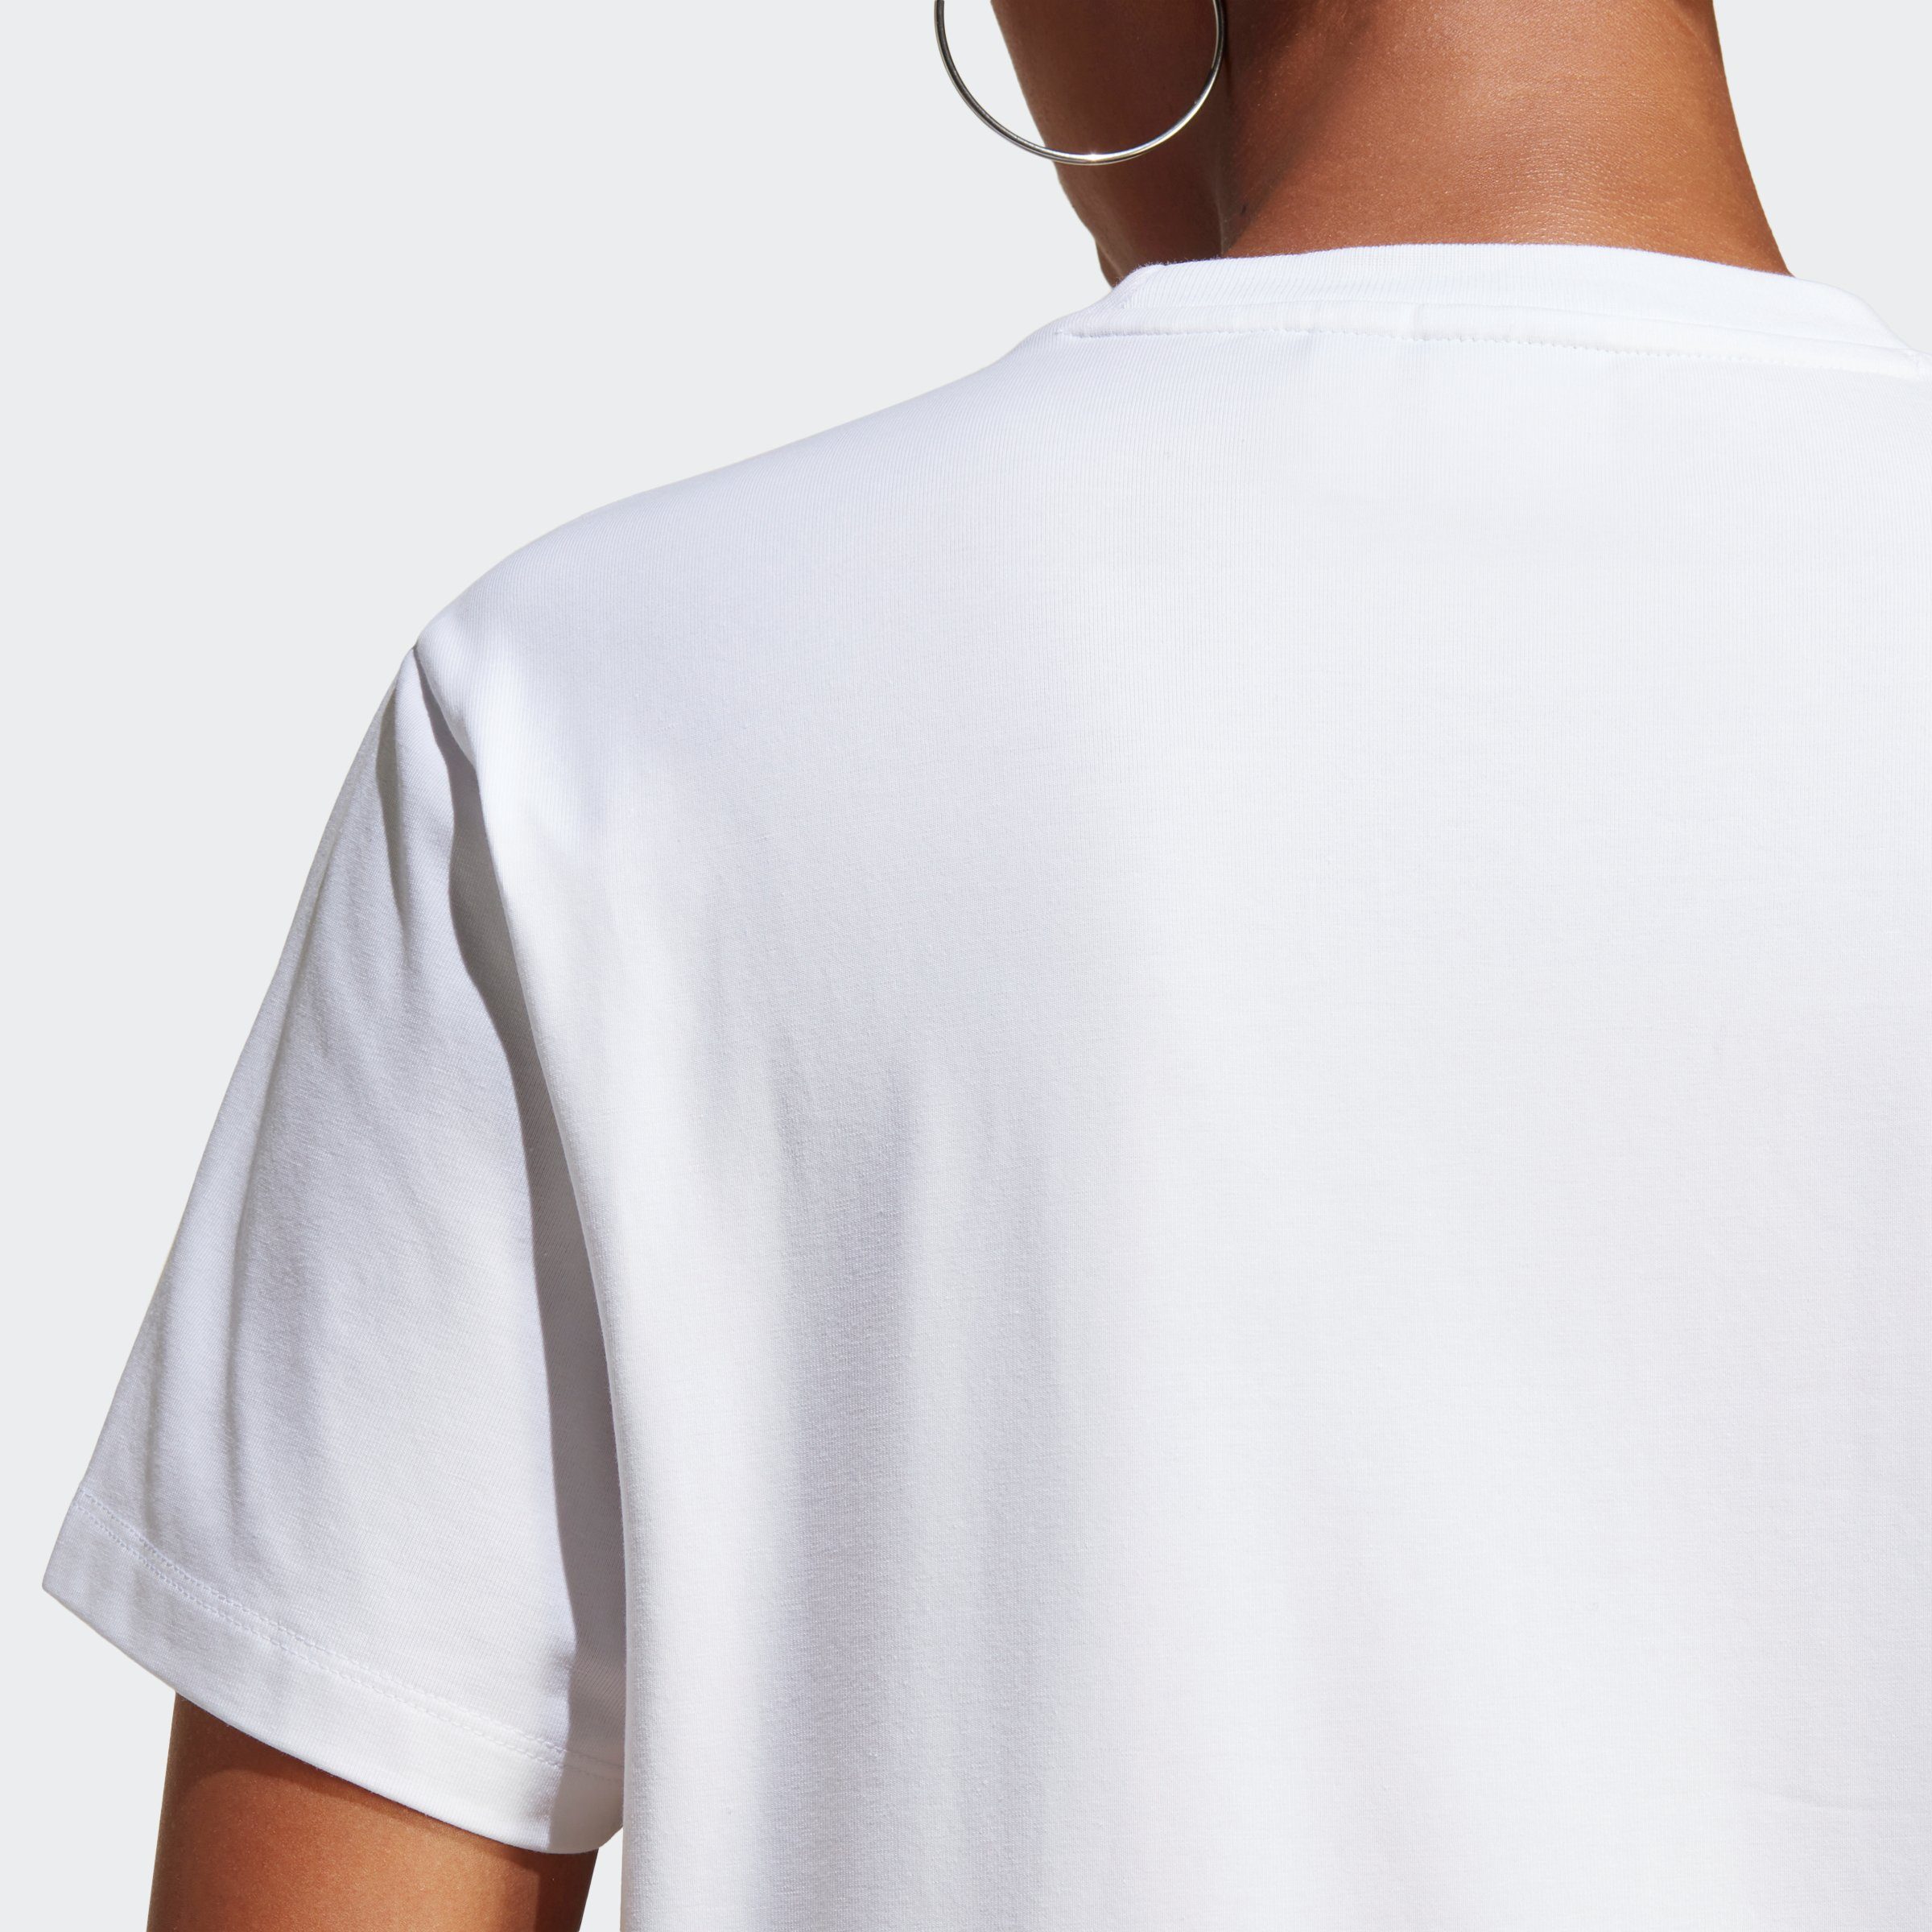 TREFOIL adidas White T-Shirt ADICOLOR CLASSICS Originals